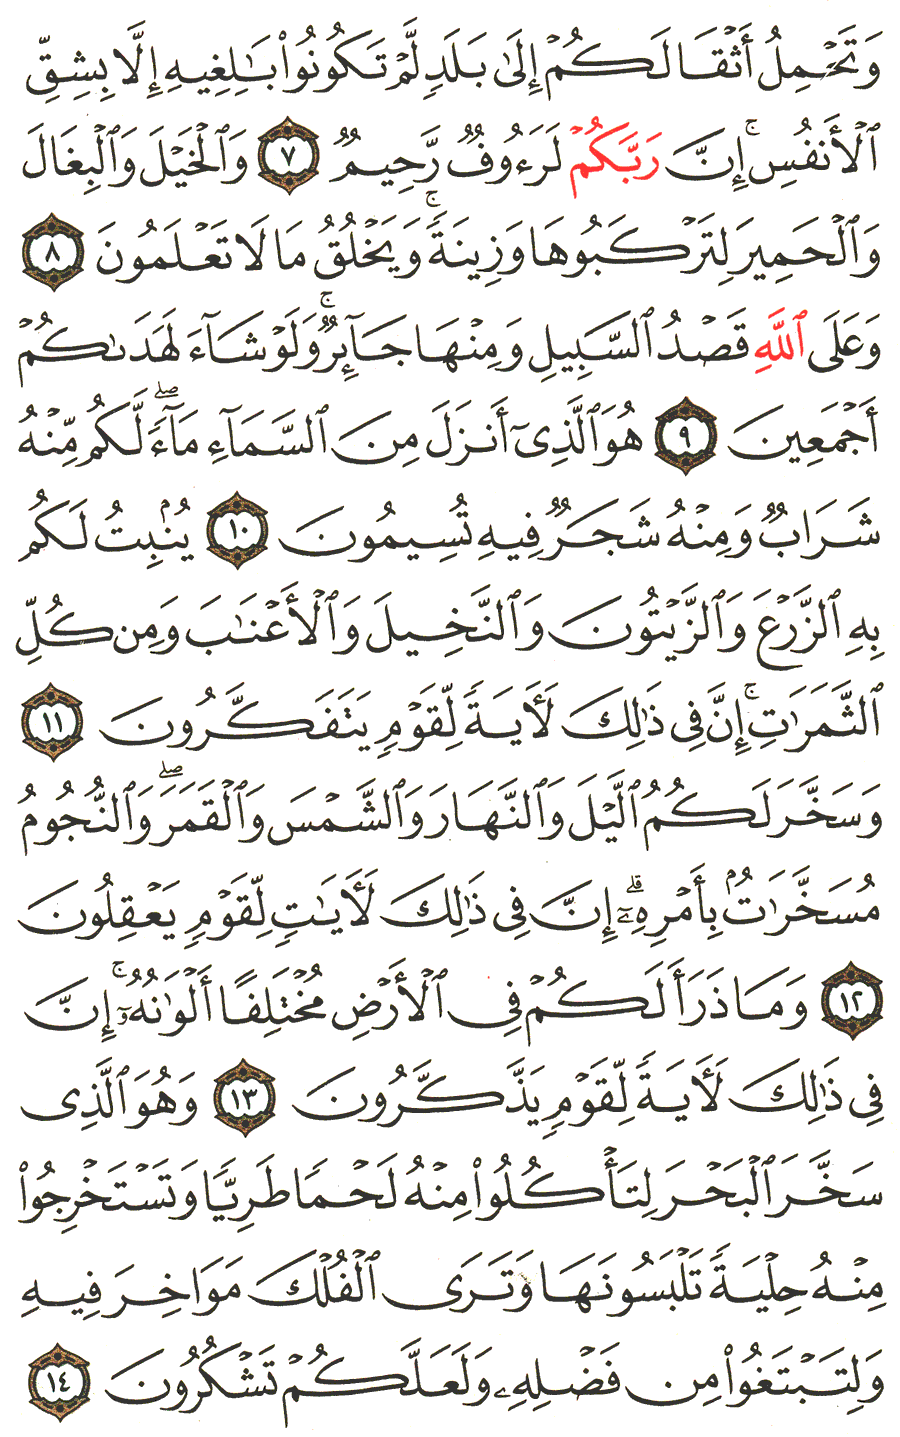 الصفحة رقم 268  من القرآن الكريم مكتوبة من المصحف